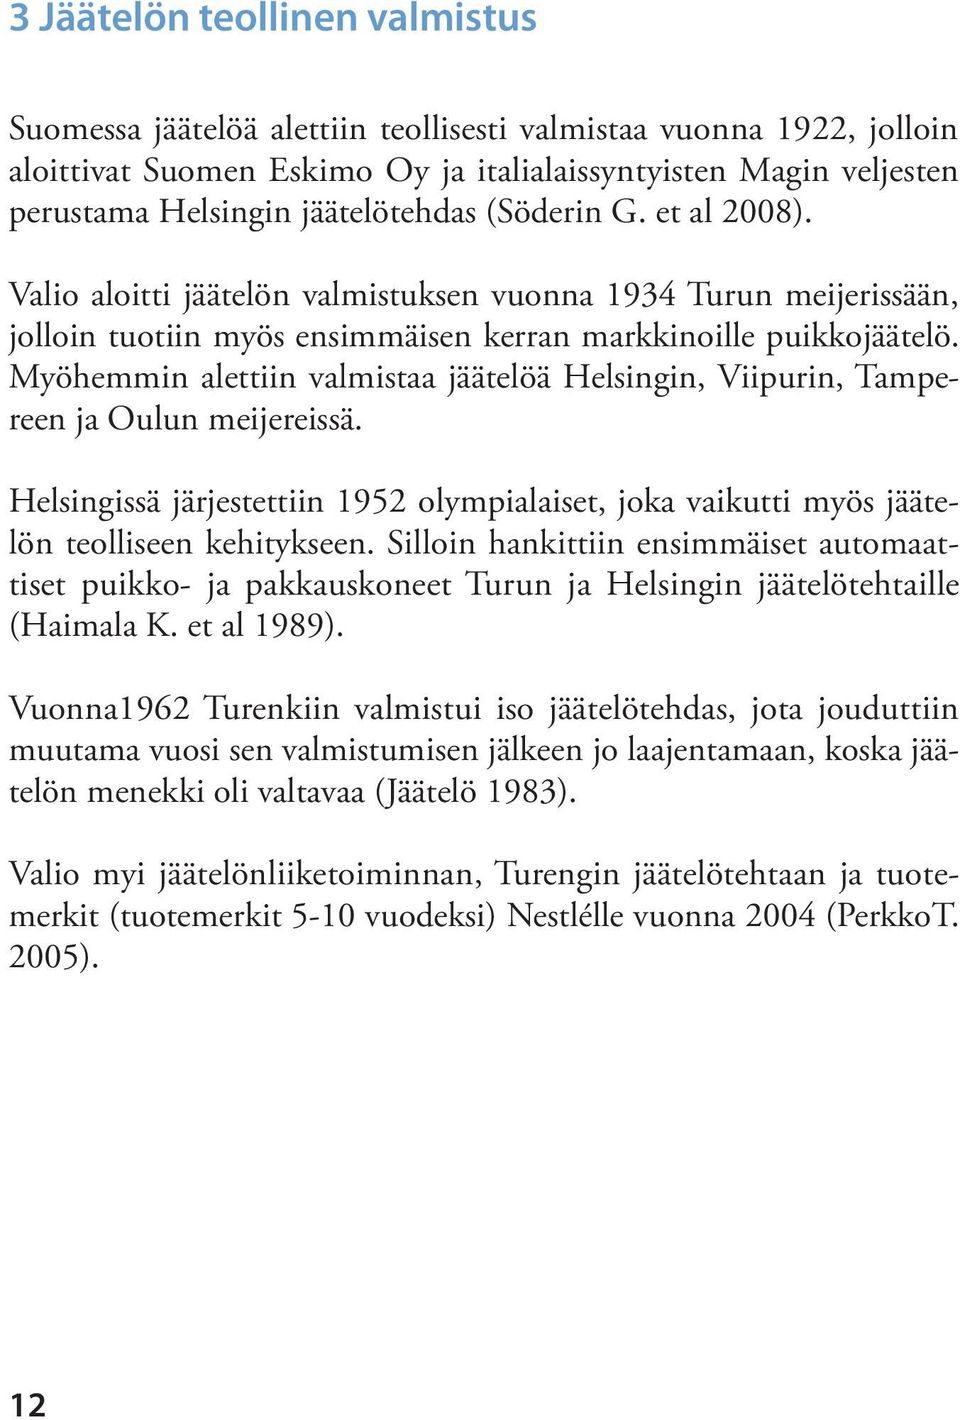 Myöhemmin alettiin valmistaa jäätelöä Helsingin, Viipurin, Tampereen ja Oulun meijereissä. Helsingissä järjestettiin 1952 olympialaiset, joka vaikutti myös jäätelön teolliseen kehitykseen.